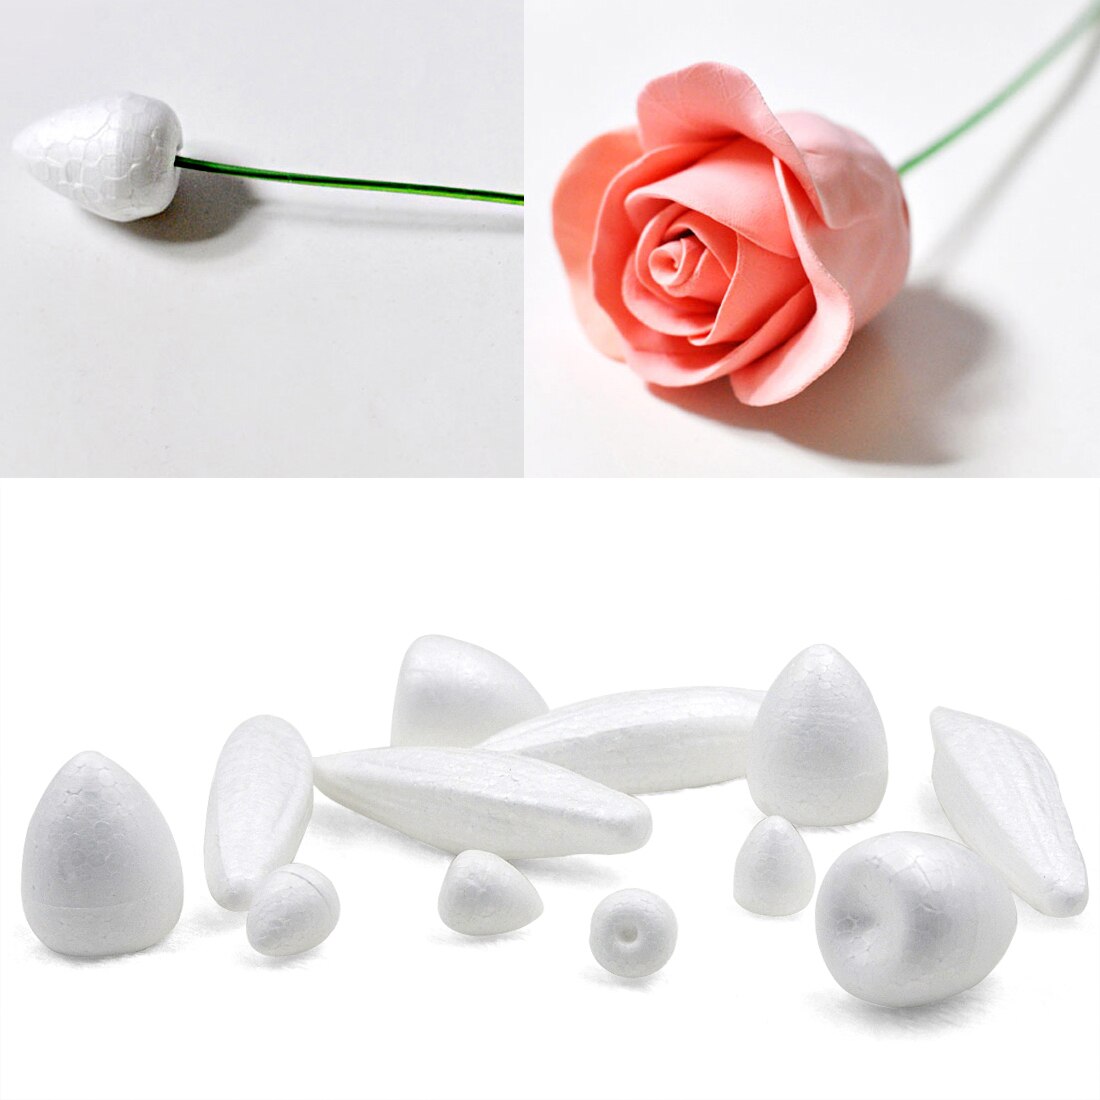 Polystyreen Piepschuim Foam Rose Buds Voor Nylon Bloem Maken Materiaal Levert Bloem Accessoire Handgemaakte DIY Craft Decoratie